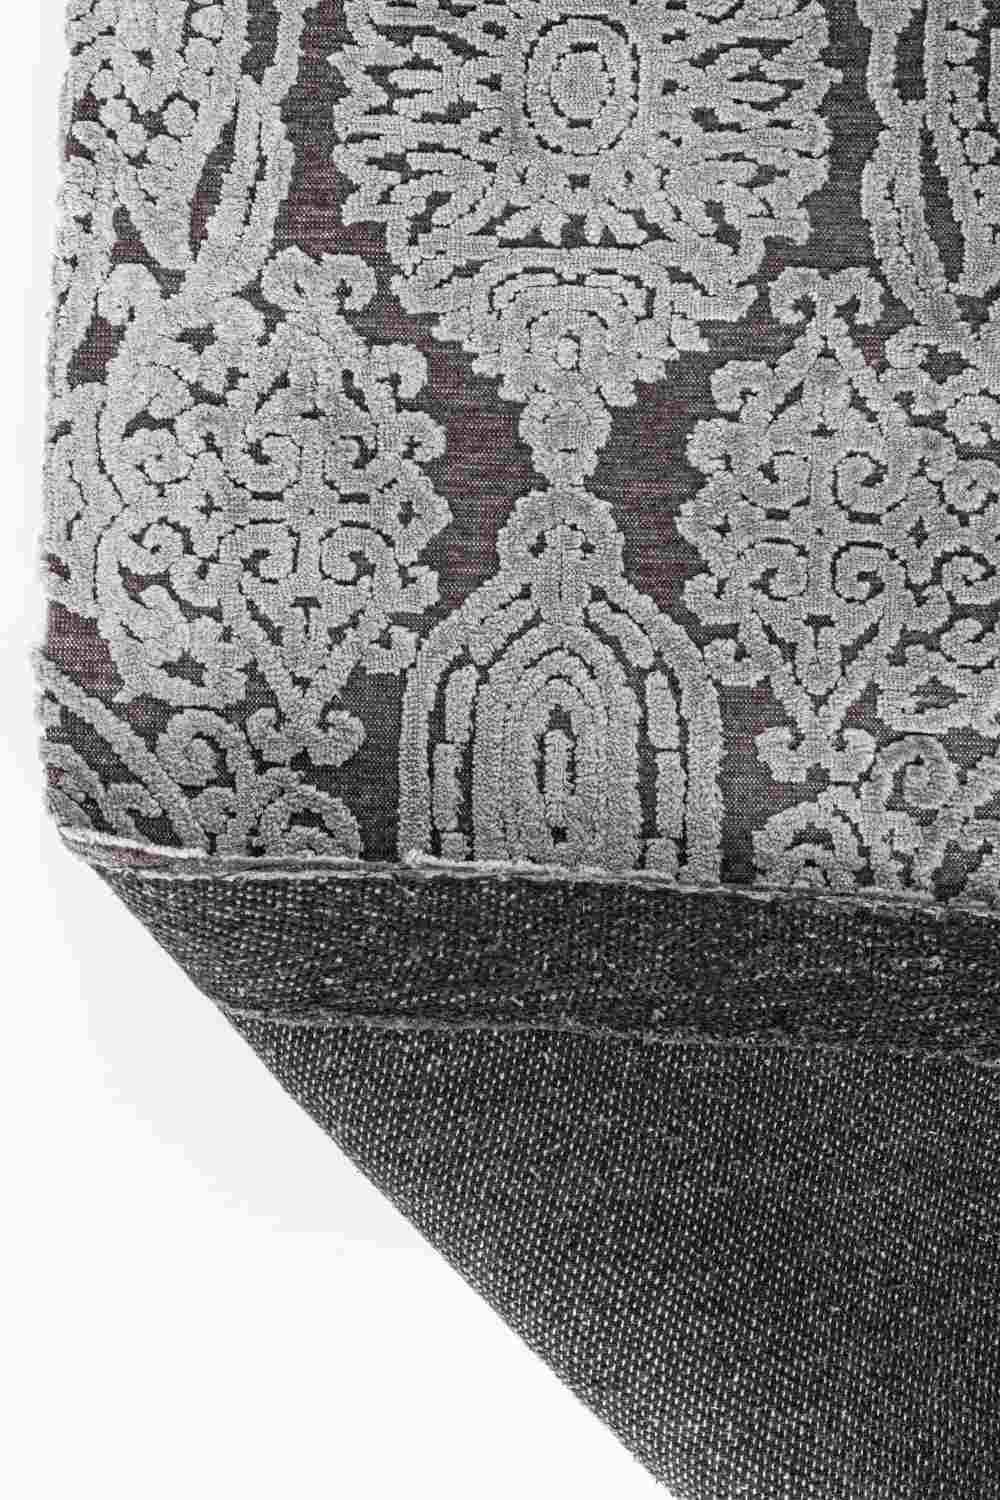 Der Teppich Dehli überzeugt mit seinem klassischen Design. Gefertigt wurde die Vorderseite aus 100% Viskose und die Rückseite aus 100% Baumwolle. Der Teppich besitzt einen grauen Farbton und die Maße von 200x300 cm.